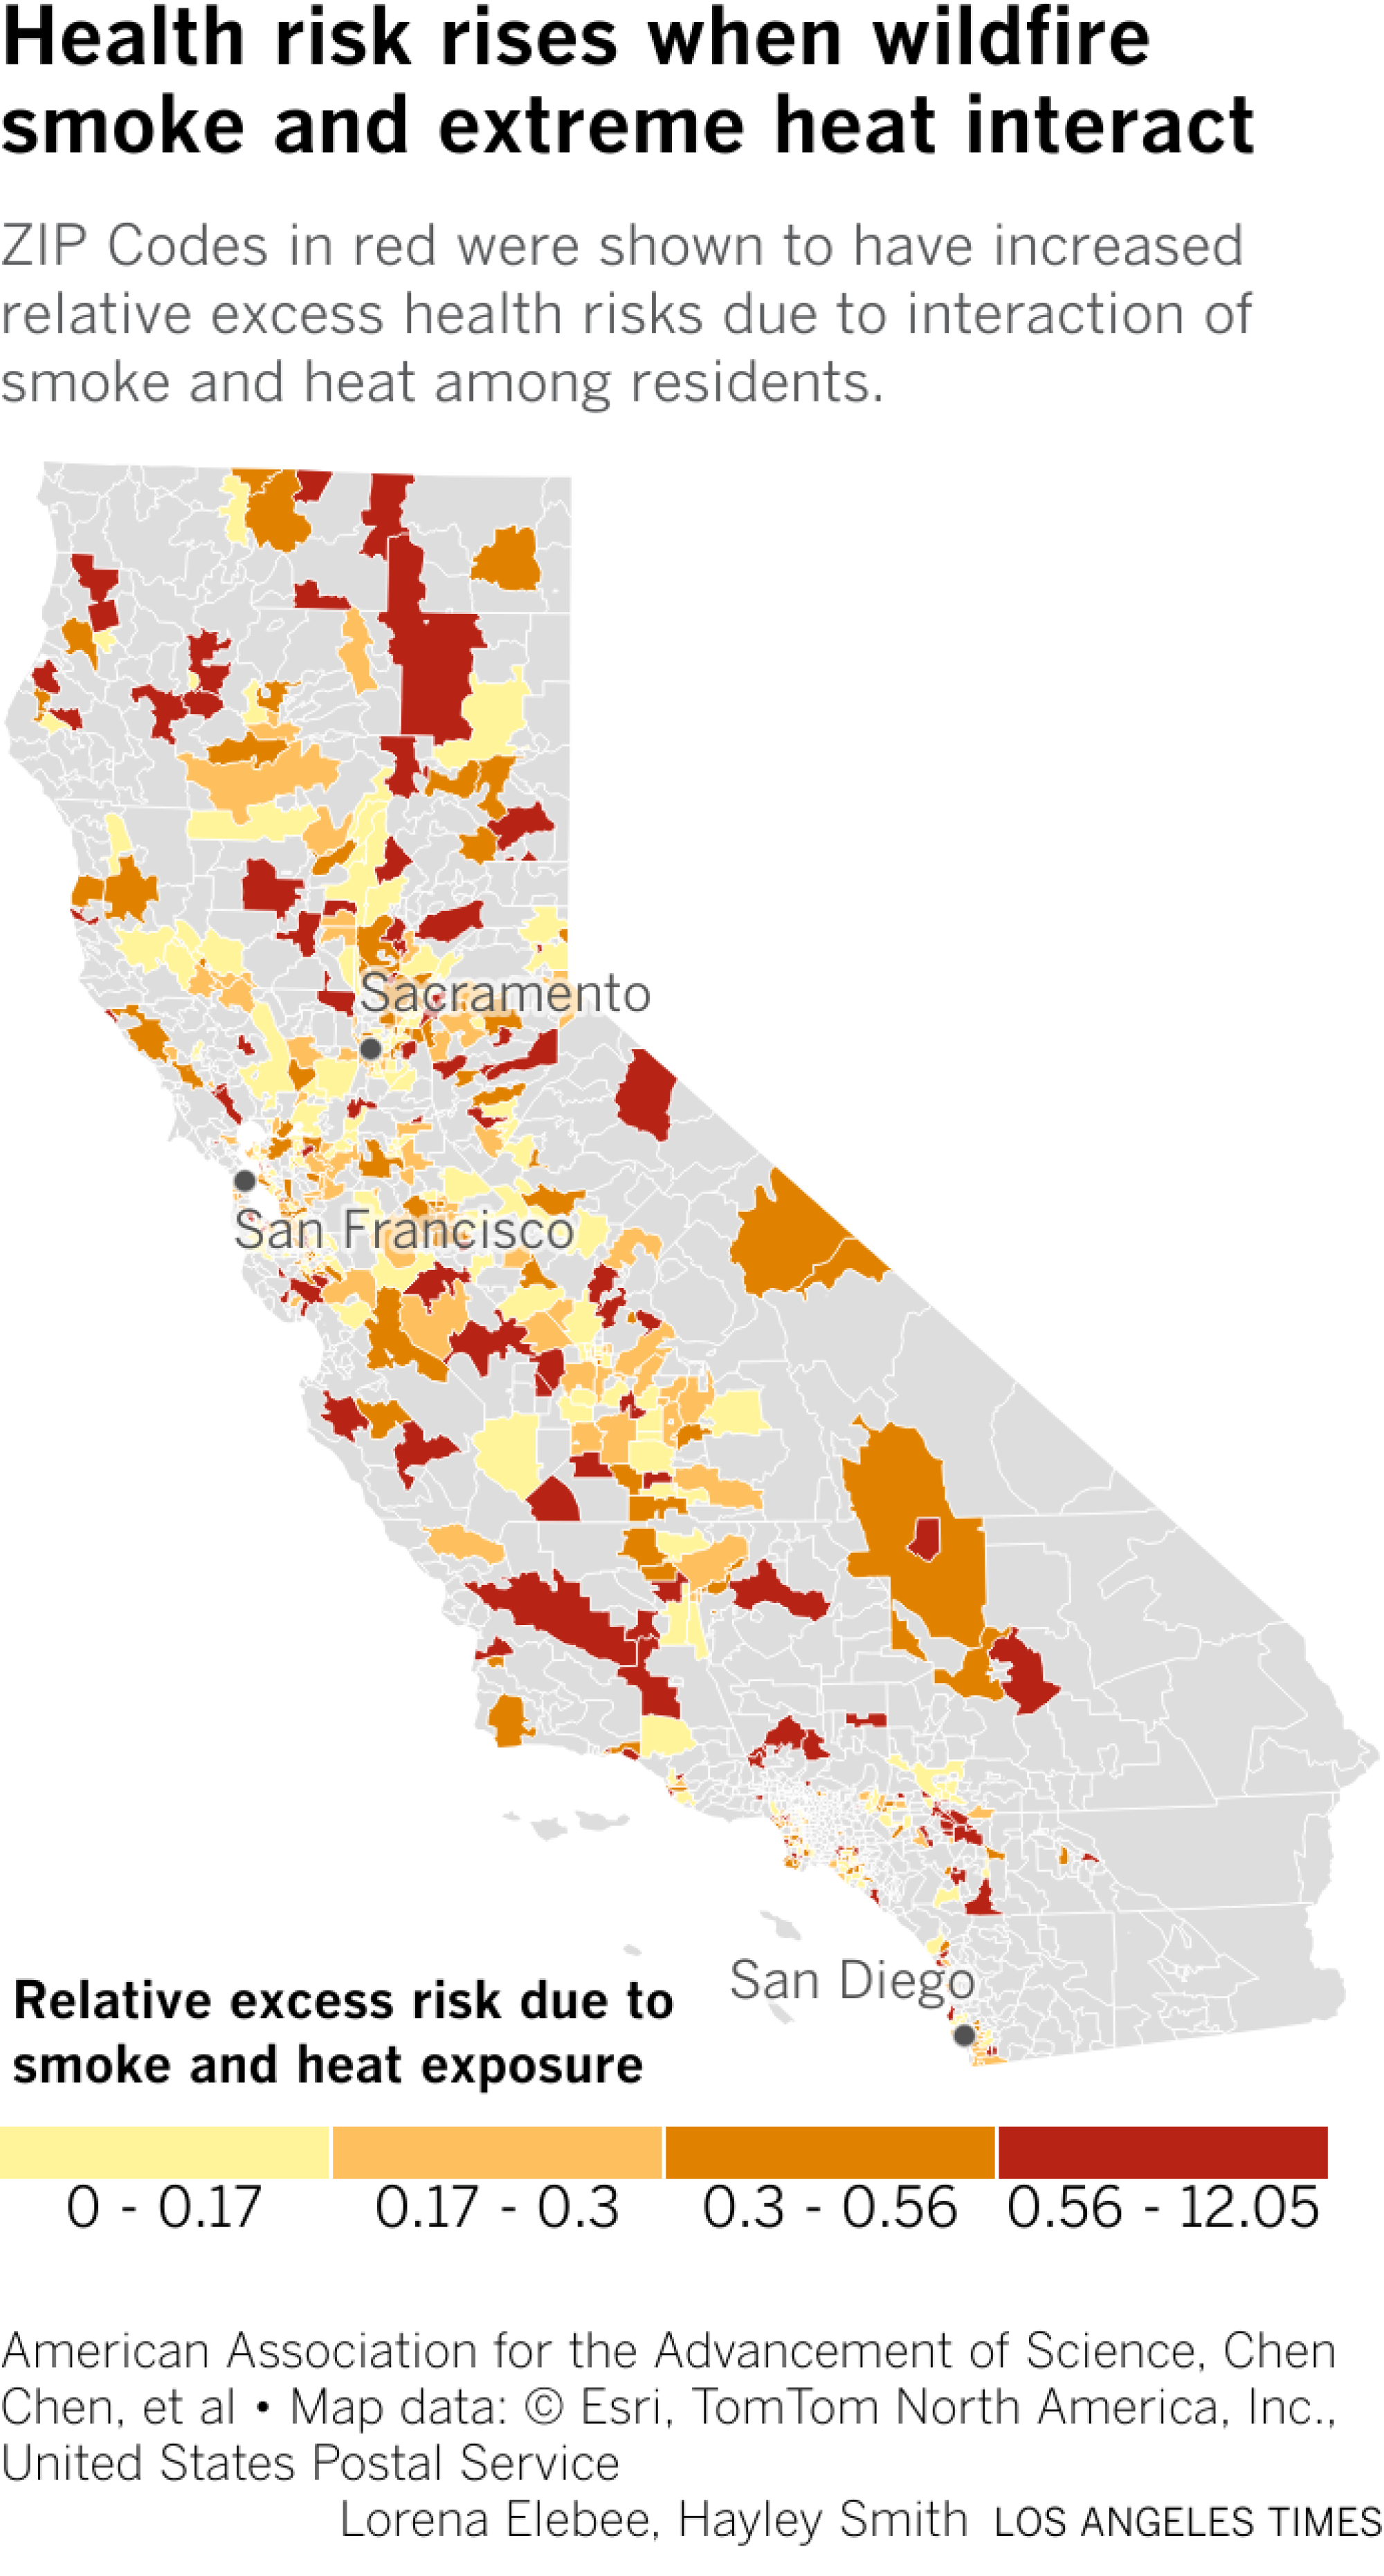 Karte von Kalifornien mit Gebieten mit geringem bis hohem Gesundheitsrisiko nach Postleitzahl aufgrund der Einwirkung von Hitze und Waldbrandrauch.